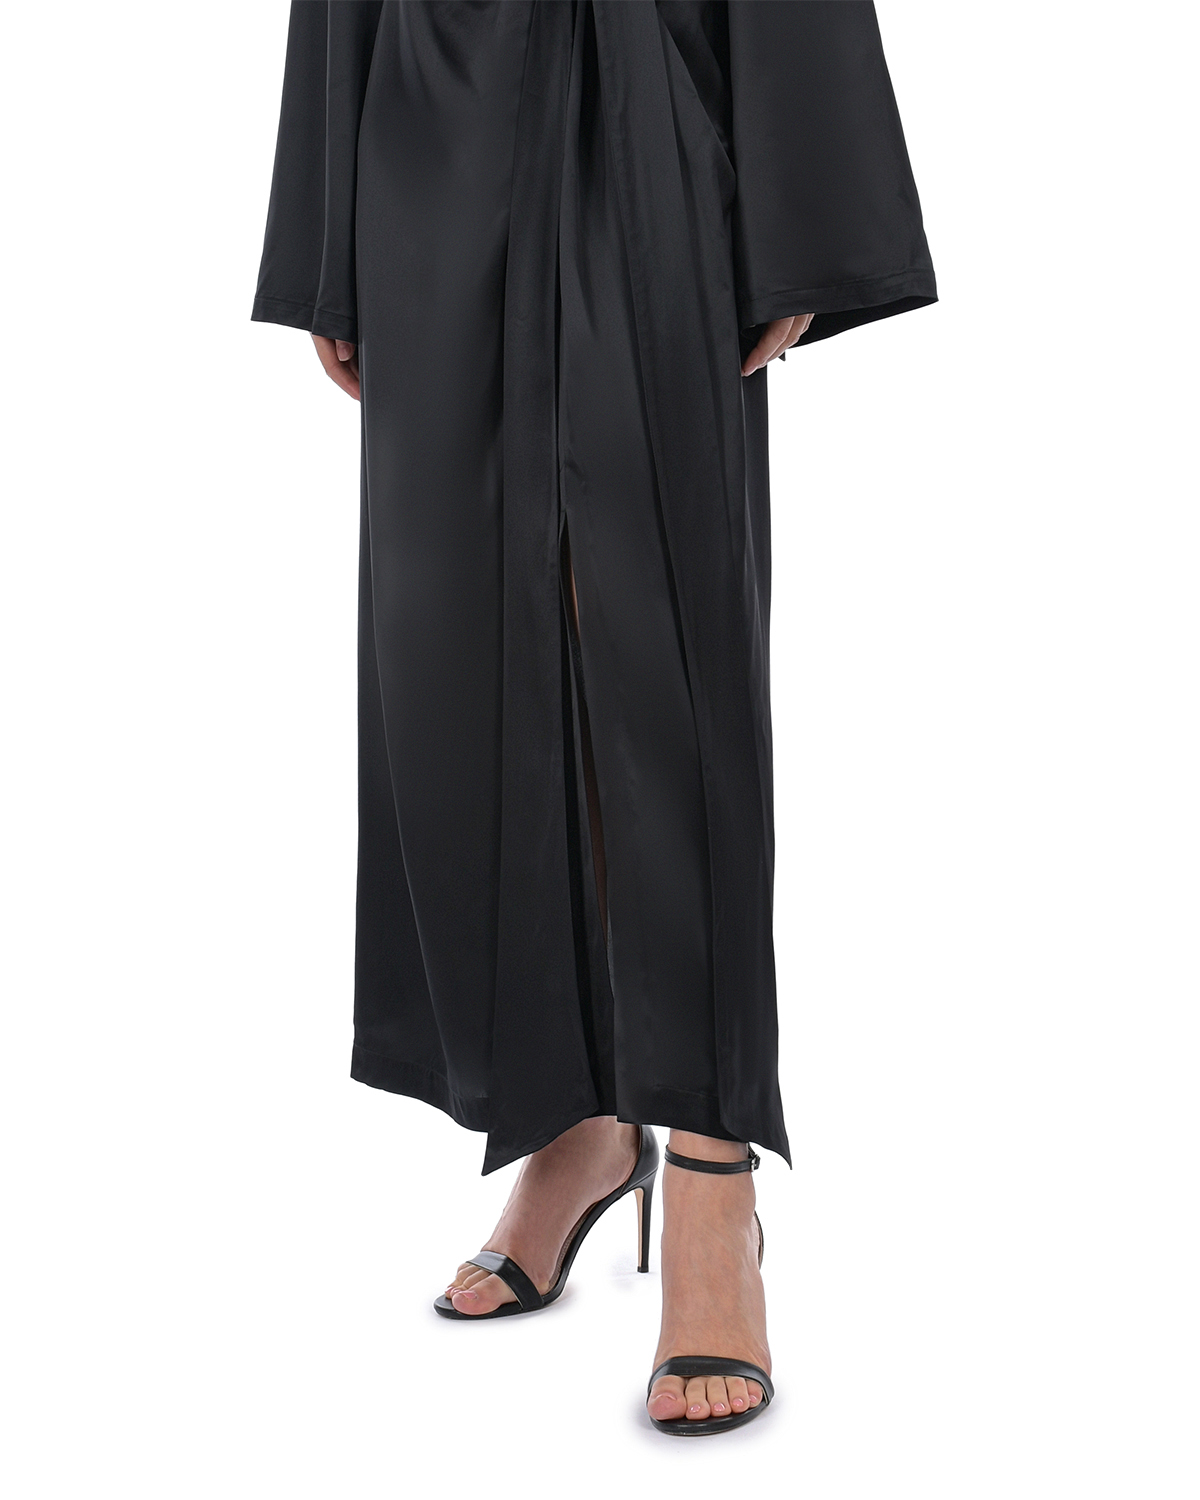 Черное платье с длинными расклешенными рукавами ROHE, размер 44, цвет черный - фото 9